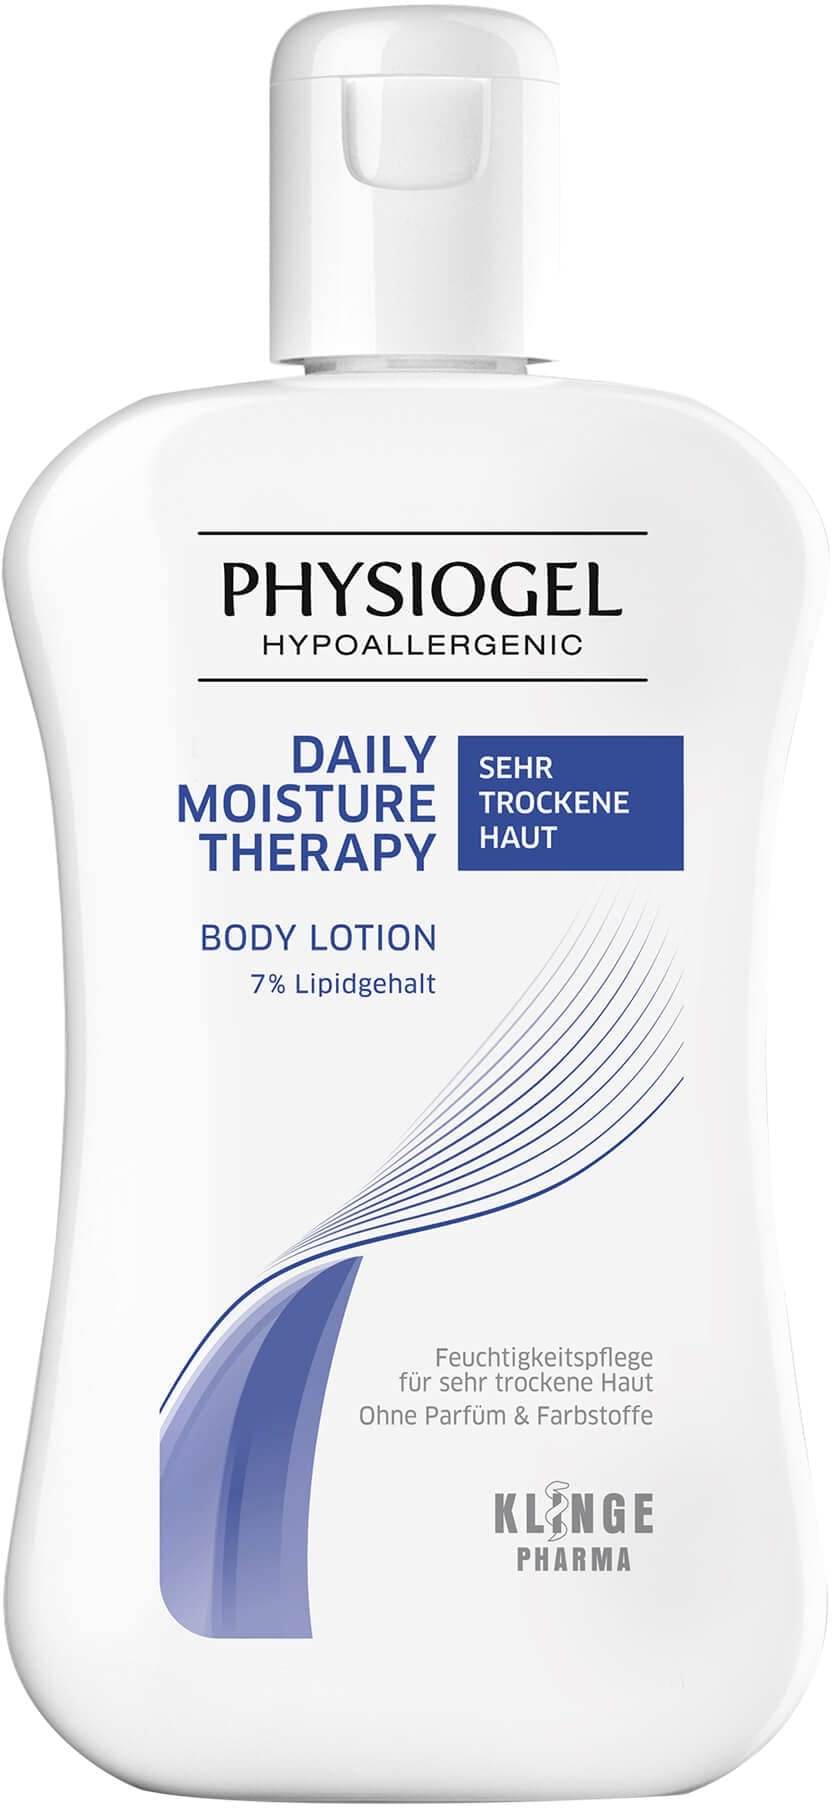 PHYSIOGEL Daily Moisture Therapy Body Lotion 200 ml – feuchtigkeitsspendende Körperlotion für sehr trockene Haut – Körpercreme für schnelle Feuchtigkeitsversorgung